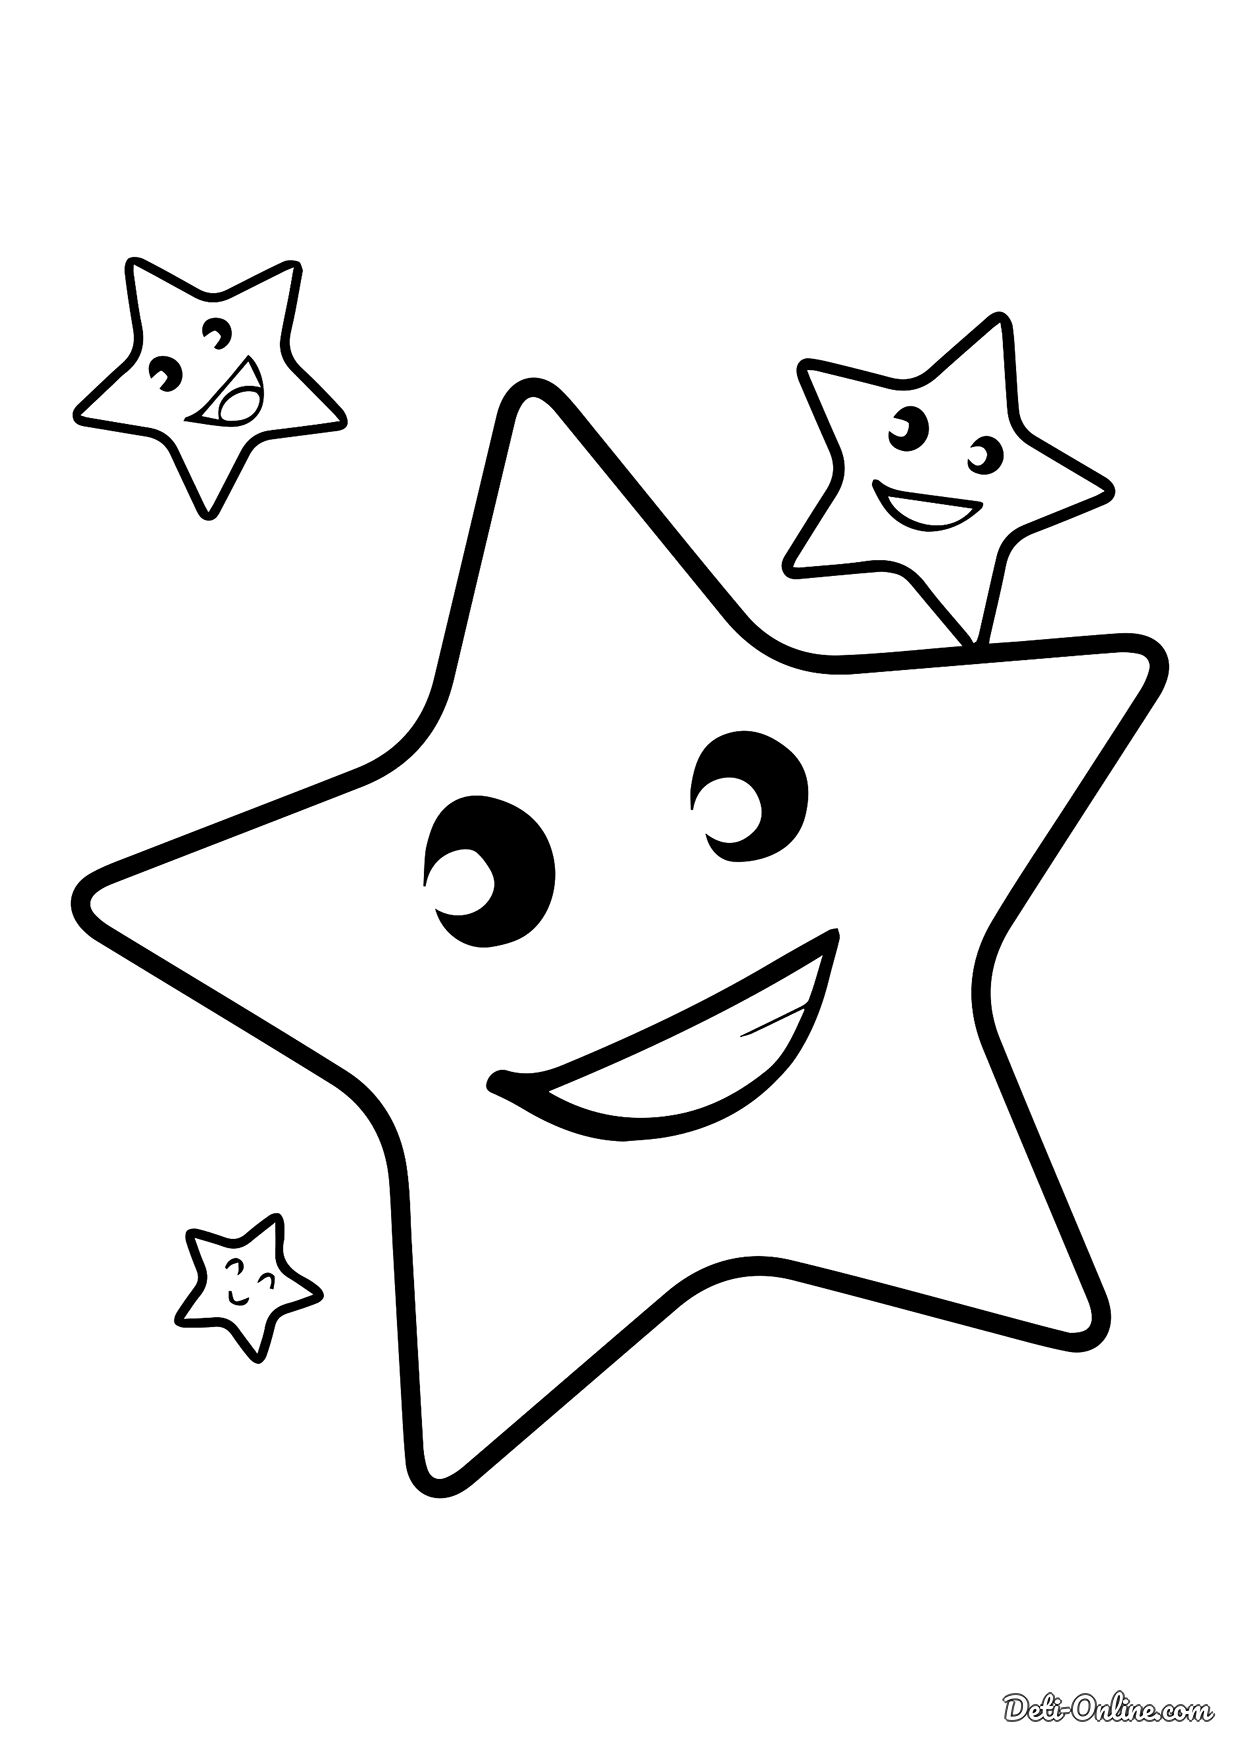 Звезда раскраска Изображения – скачать бесплатно на Freepik